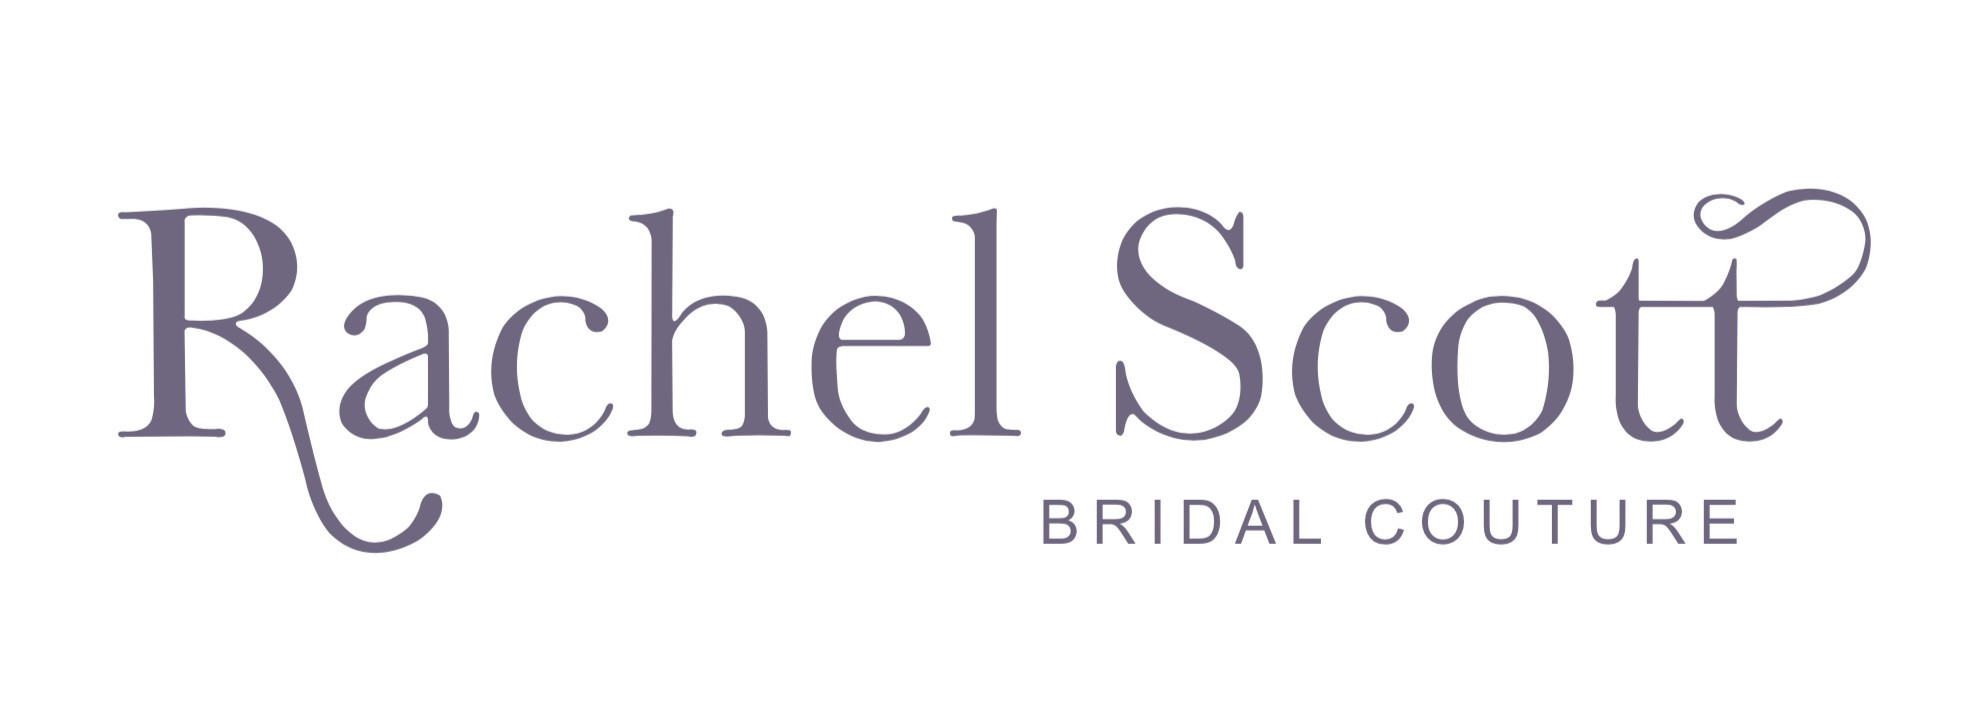 Bridal Couture Logo - Rachel Scott Bridal Couture – Rachel Scott Couture